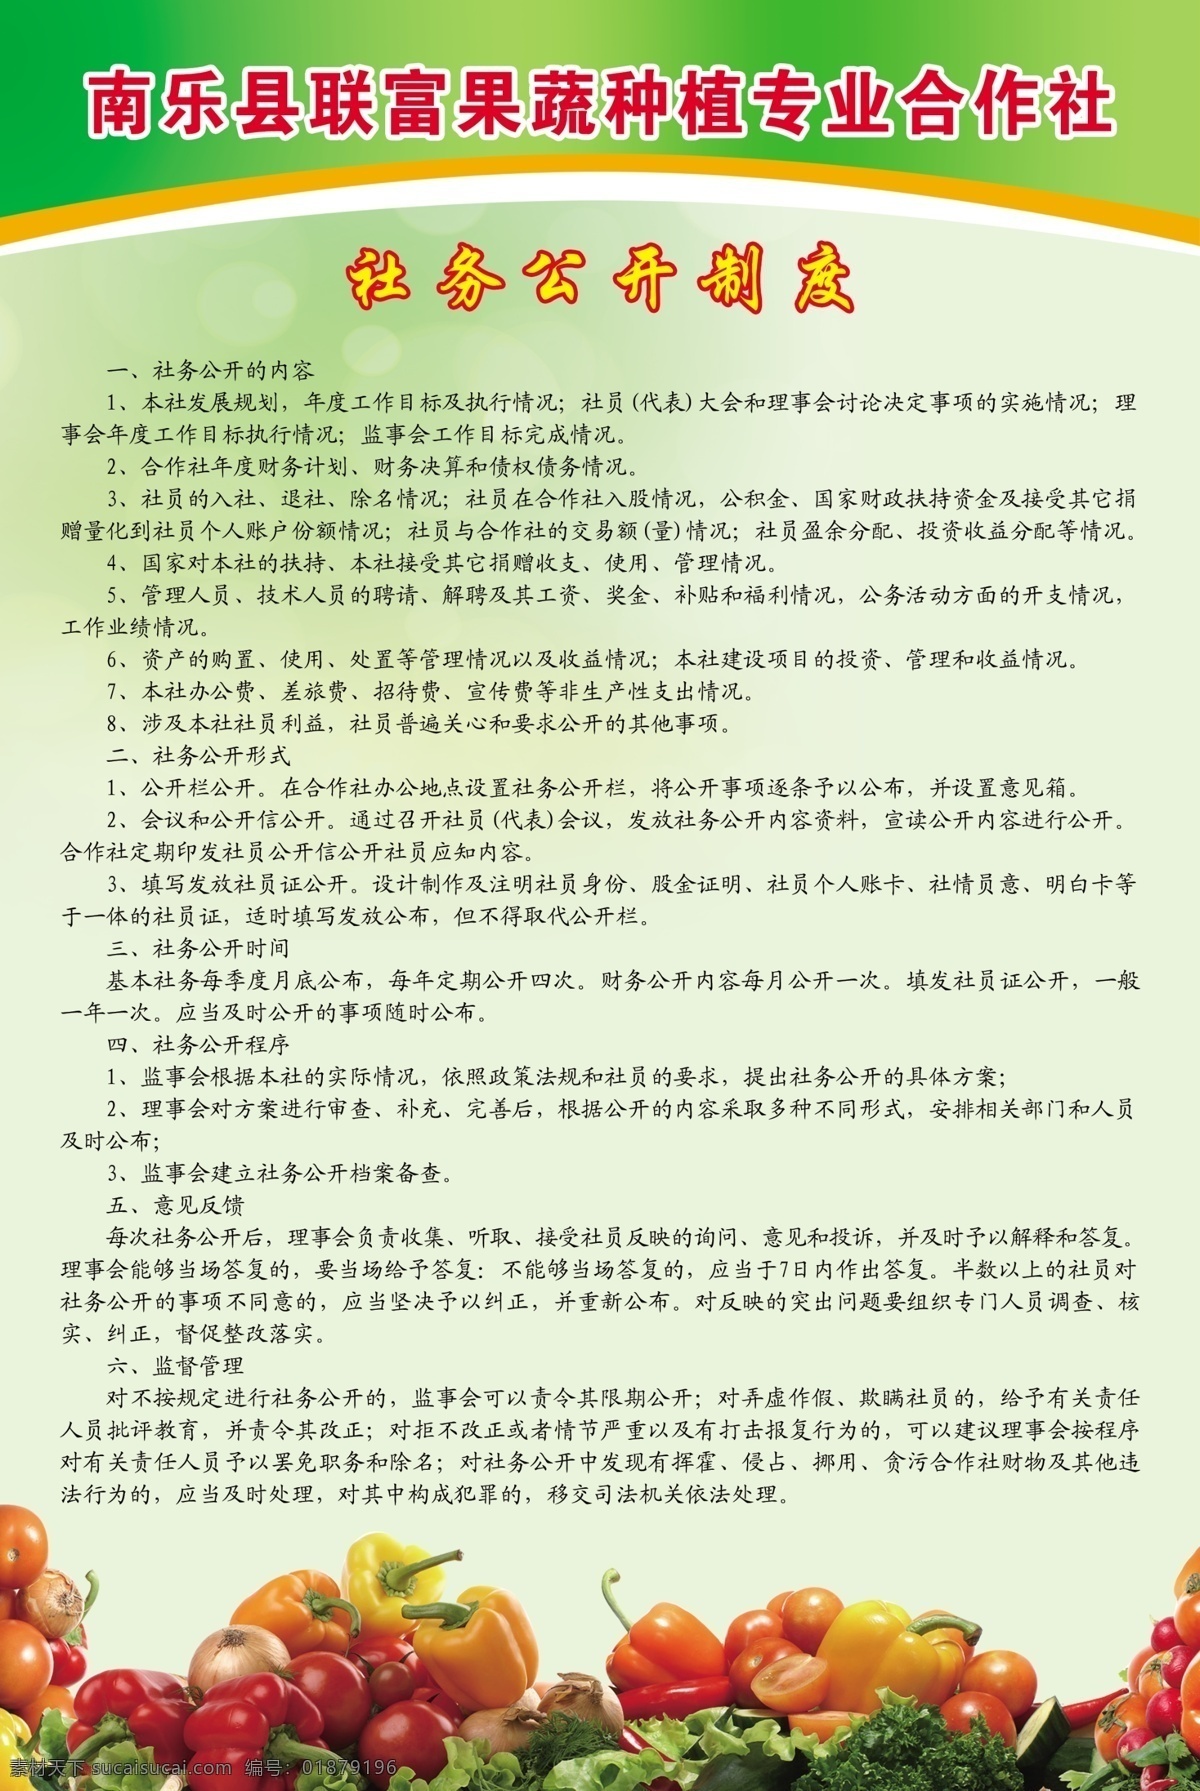 社务公开制度 南乐县 联 富 果蔬 种植 专业 合作社 合作社章程 制度版面 水果 蔬菜 绿色背景 源文件 展板模板 广告设计模板